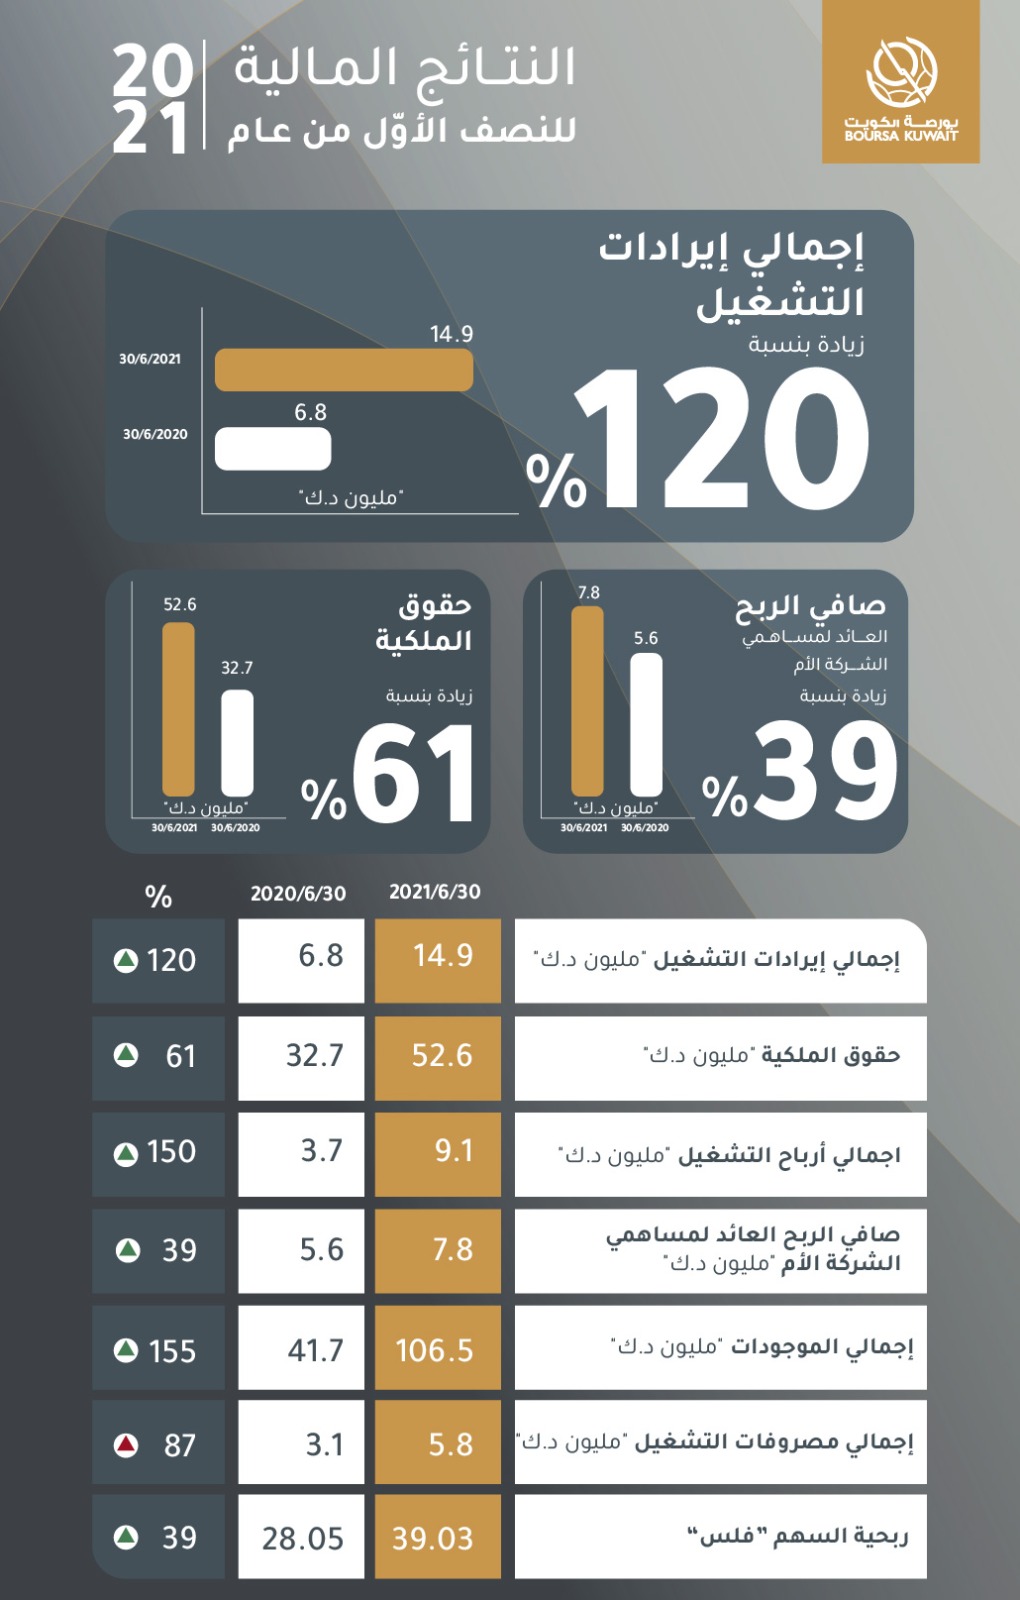 ارتفاع صافي أرباح "بورصة الكويت" بنسبة 39% للنصف الأول من العام الحالي 1